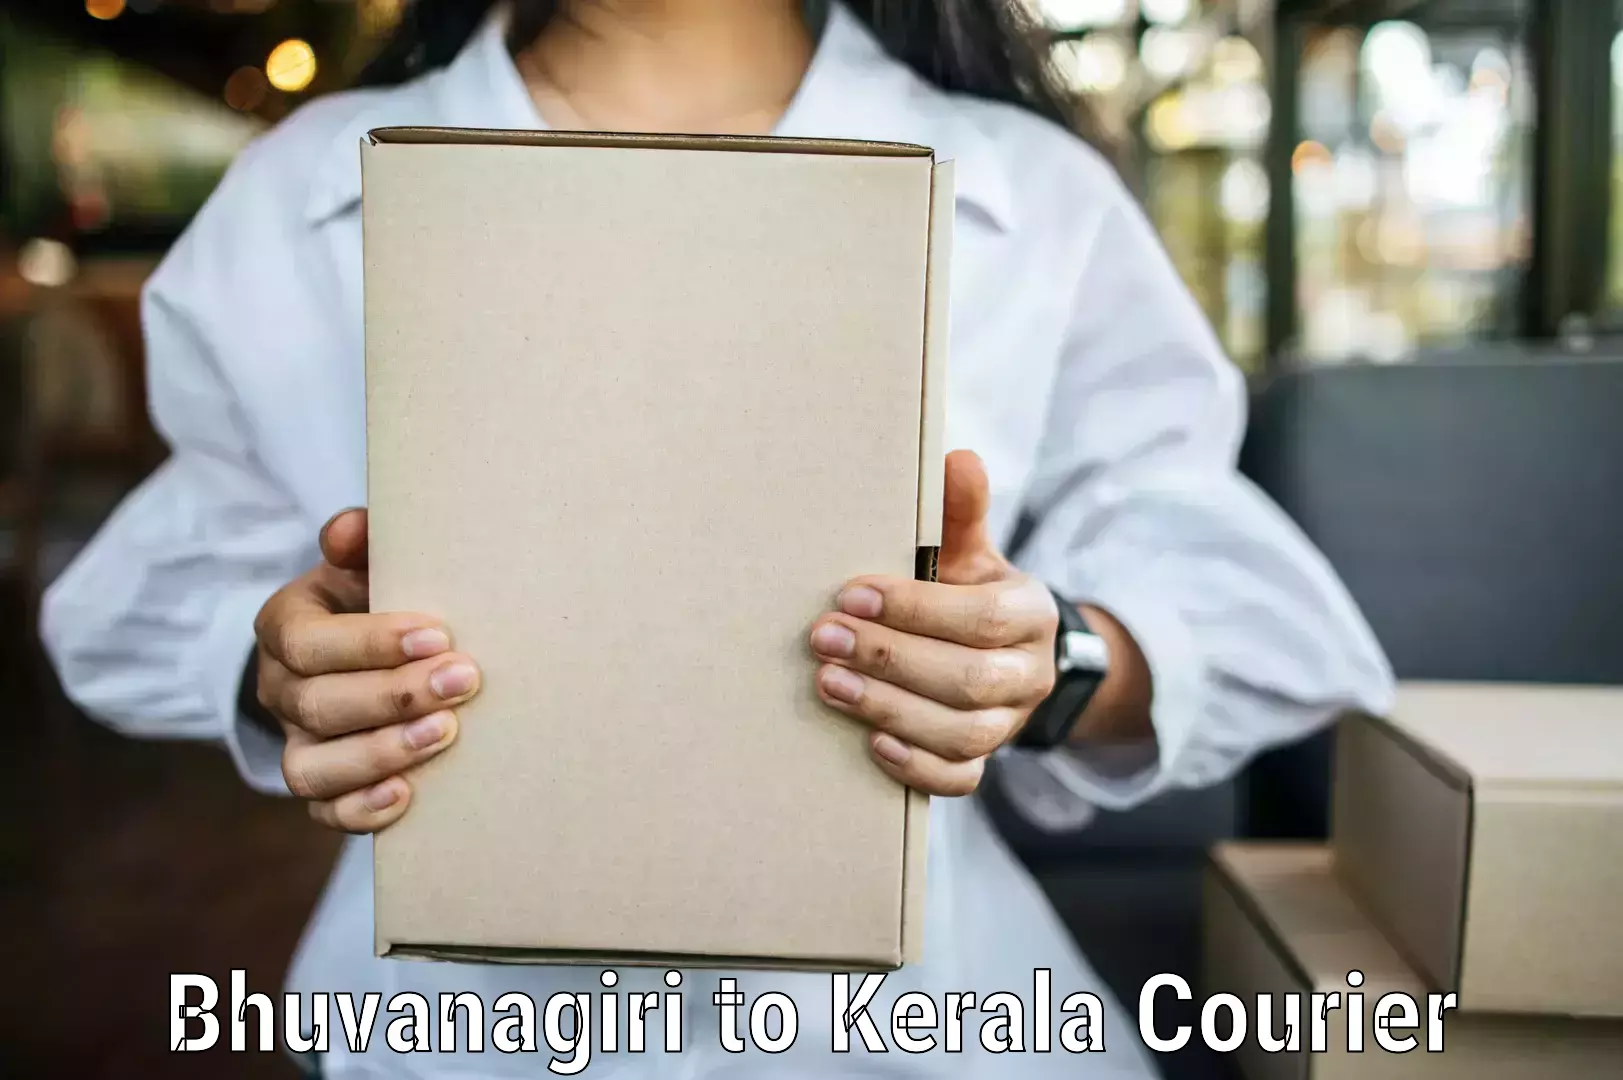 Corporate courier solutions Bhuvanagiri to Cochin Port Kochi